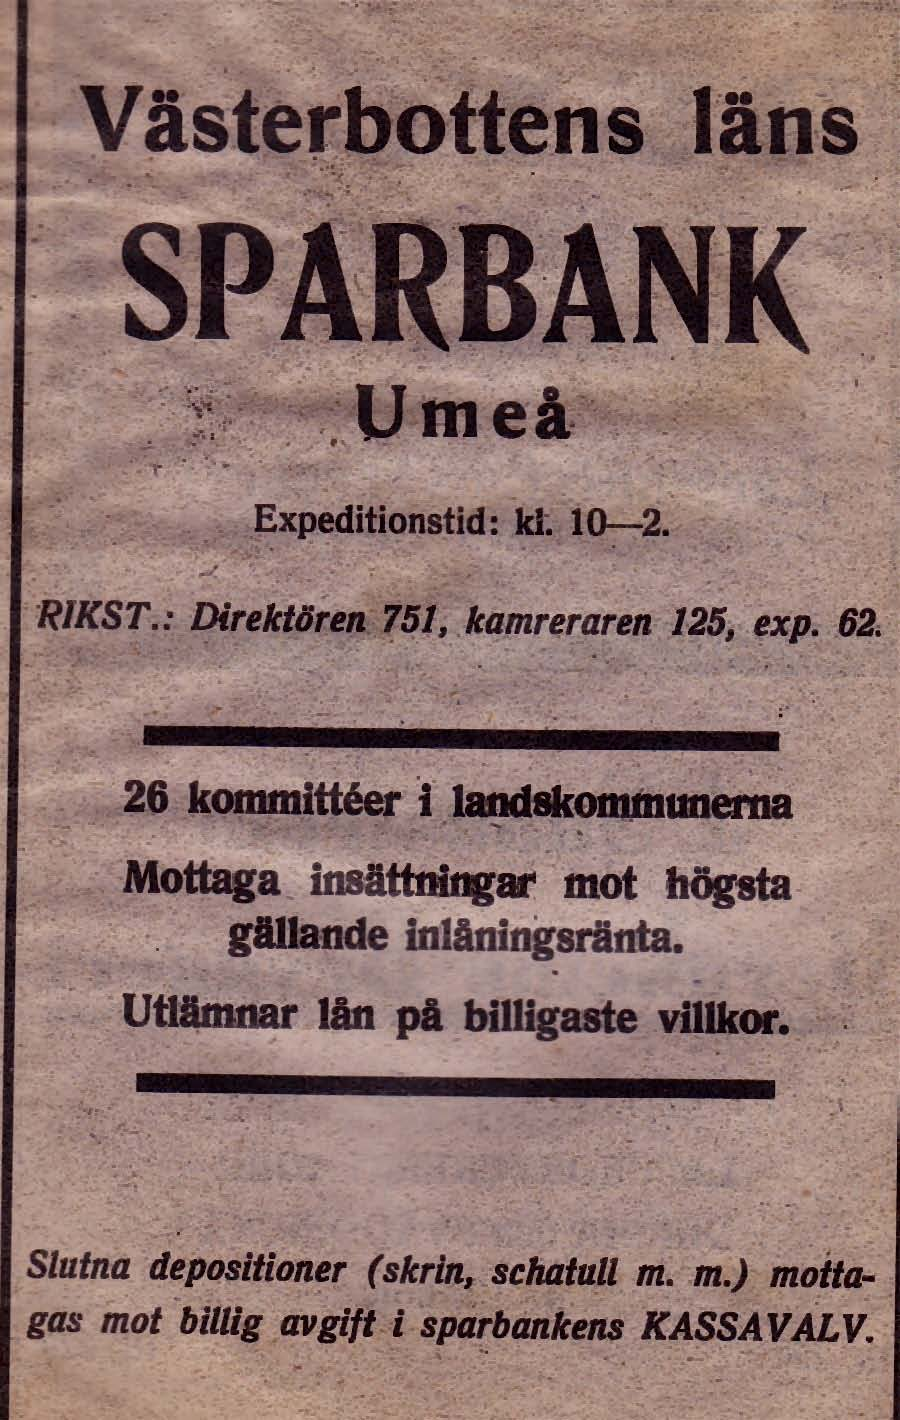 15 Västerbottens Läns Sparbank Direktör Tel. 751 1933 - - Kamrer Tel 125 1933 - - exp. Tel. 62 1933 Västerbottens Läns Sparbank Storgatan 51 Tel. 118240 1966 -- Dir.